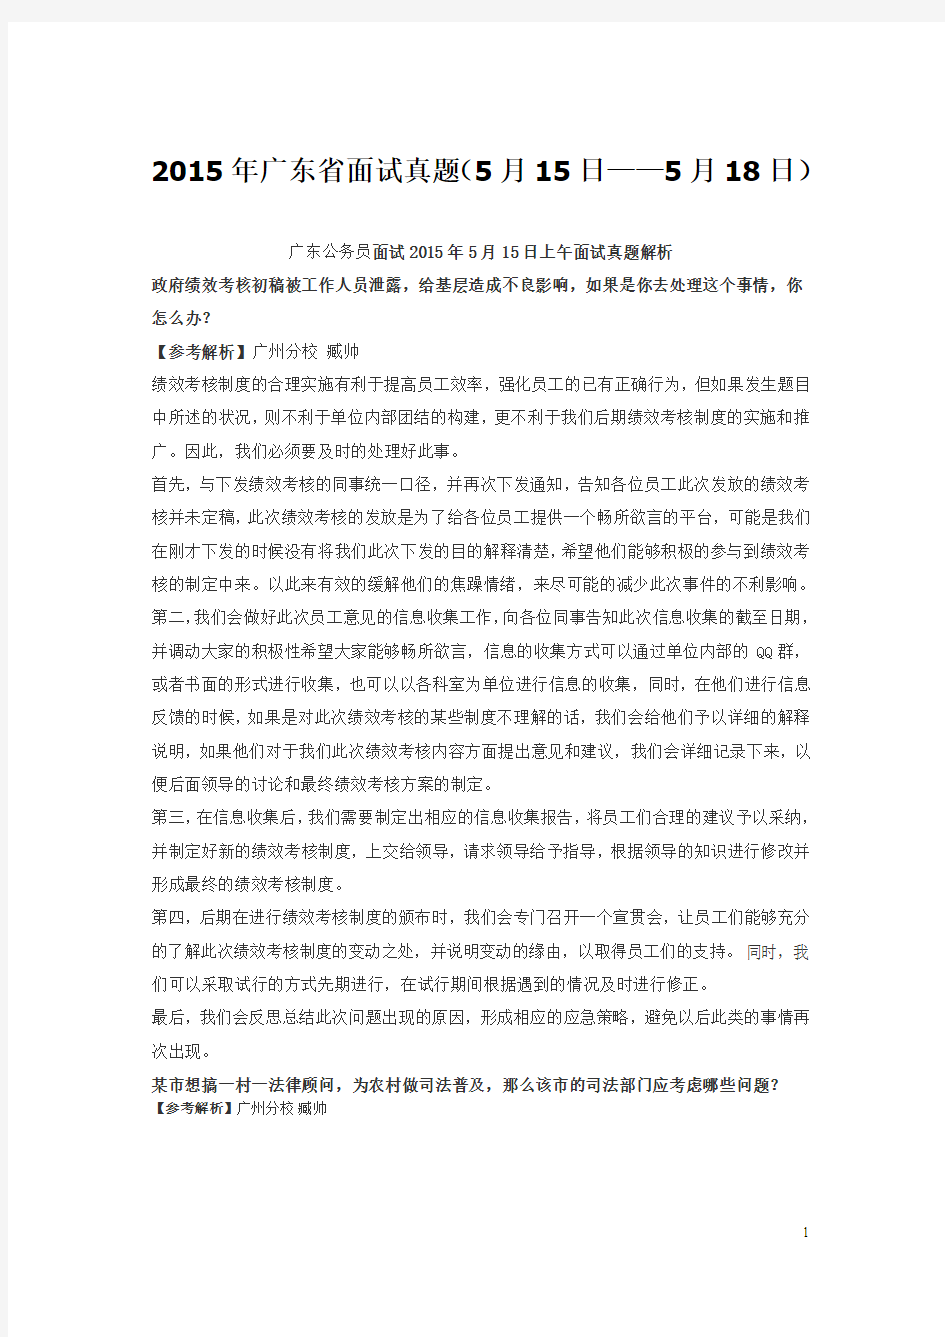 2015年广东省面试真题(5月15日——5月18日)